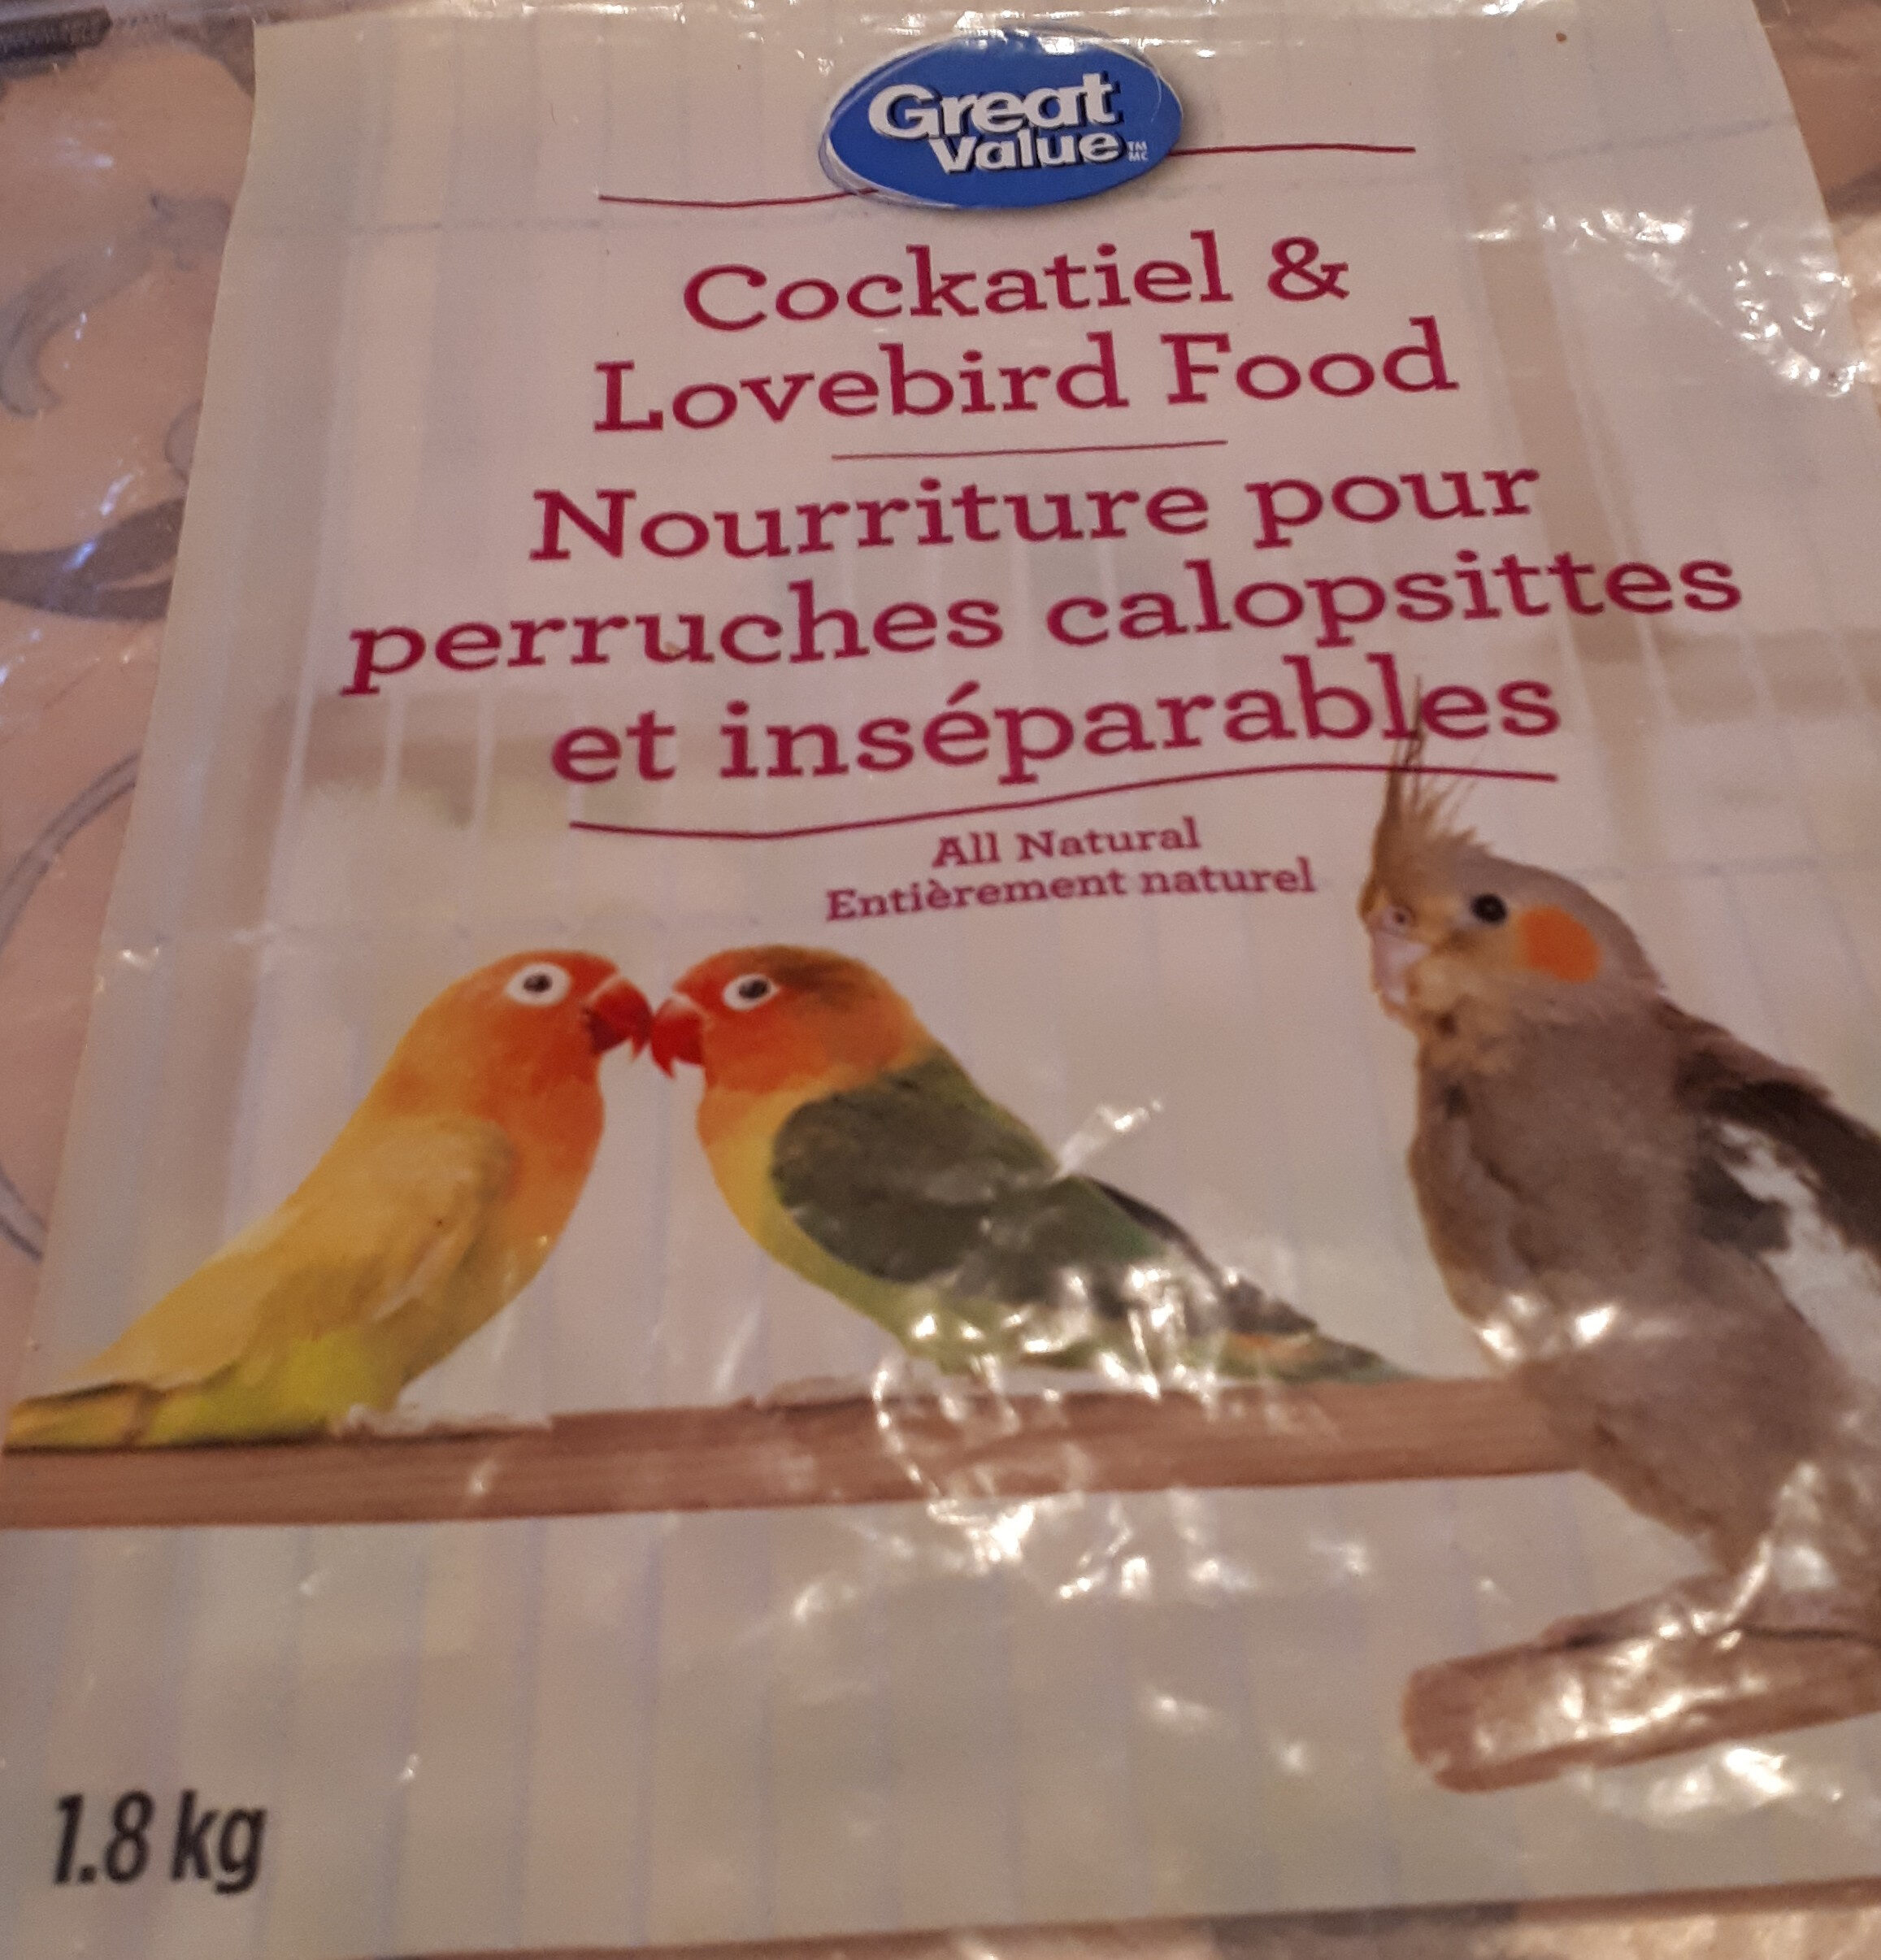 Nourriture pour perruches calopsittes et inséparables - Product - fr